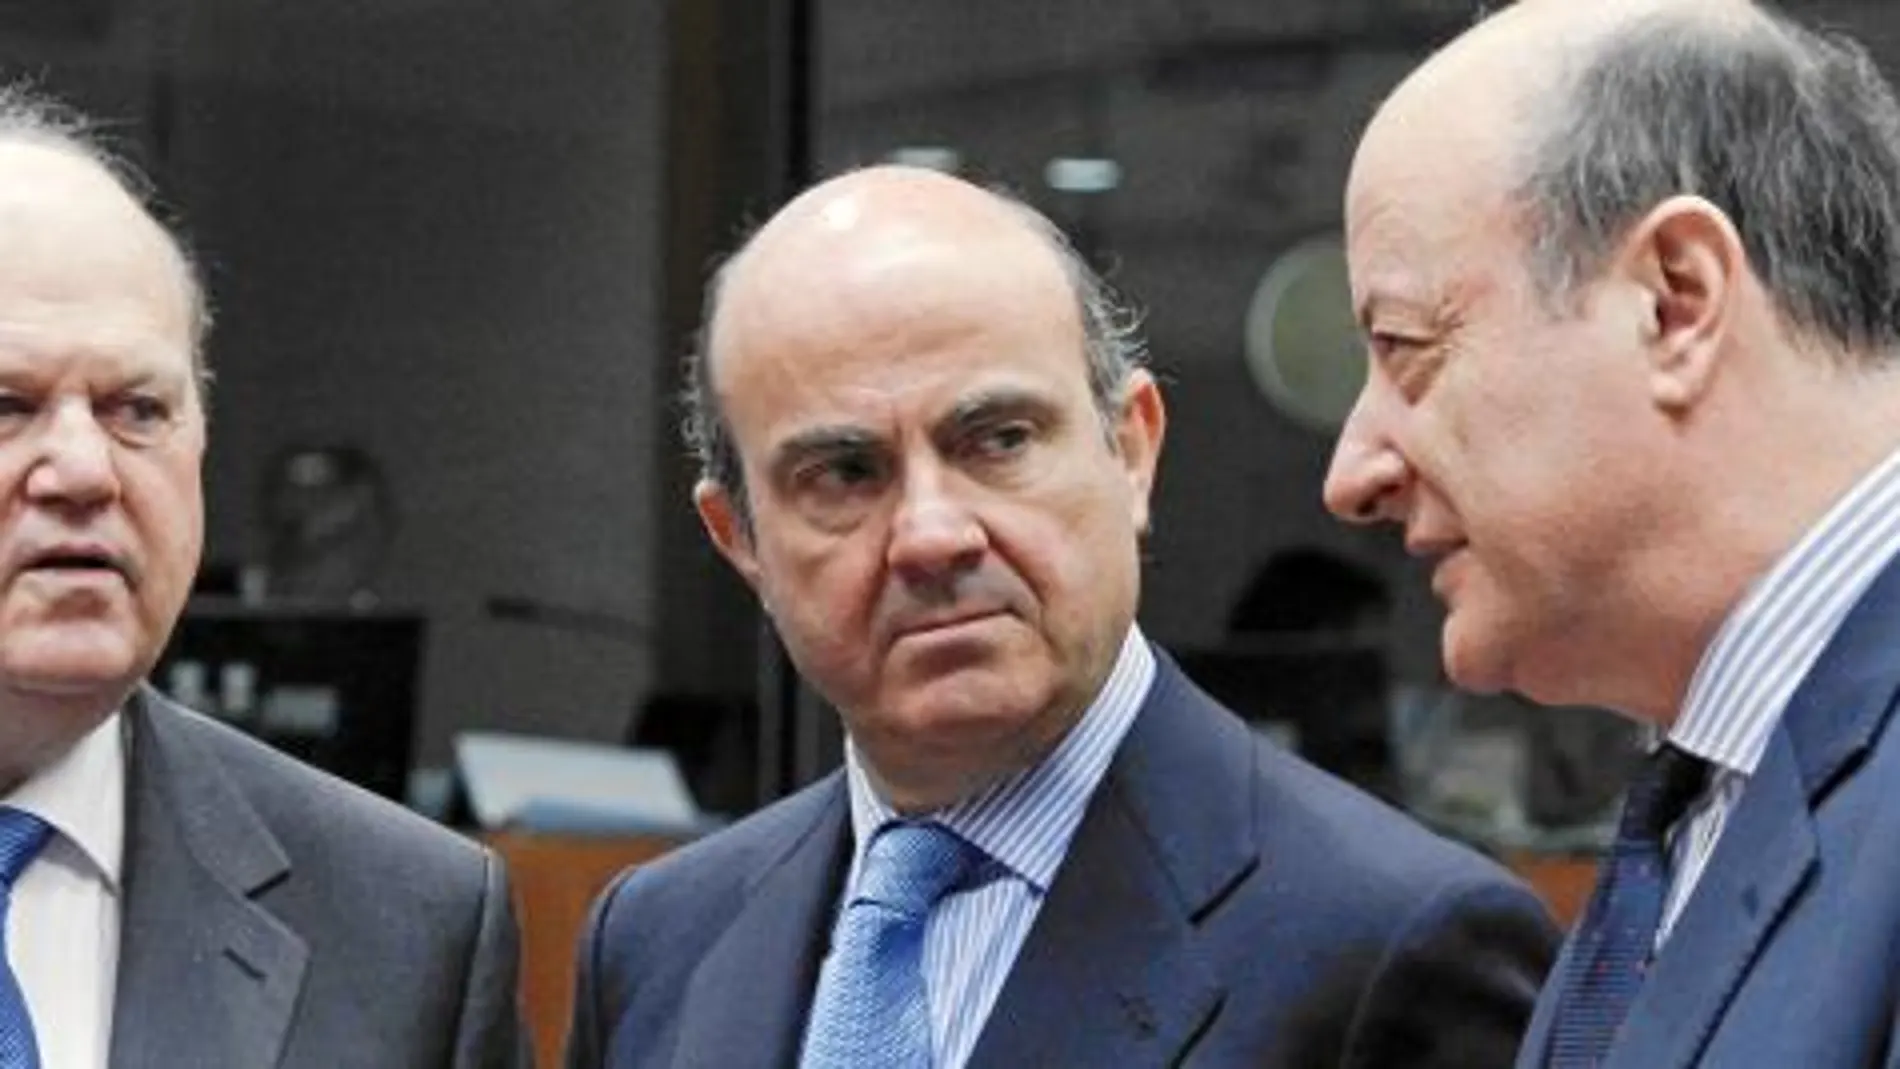 La UE acuerda inyectar 100000 millones a los bancos españoles